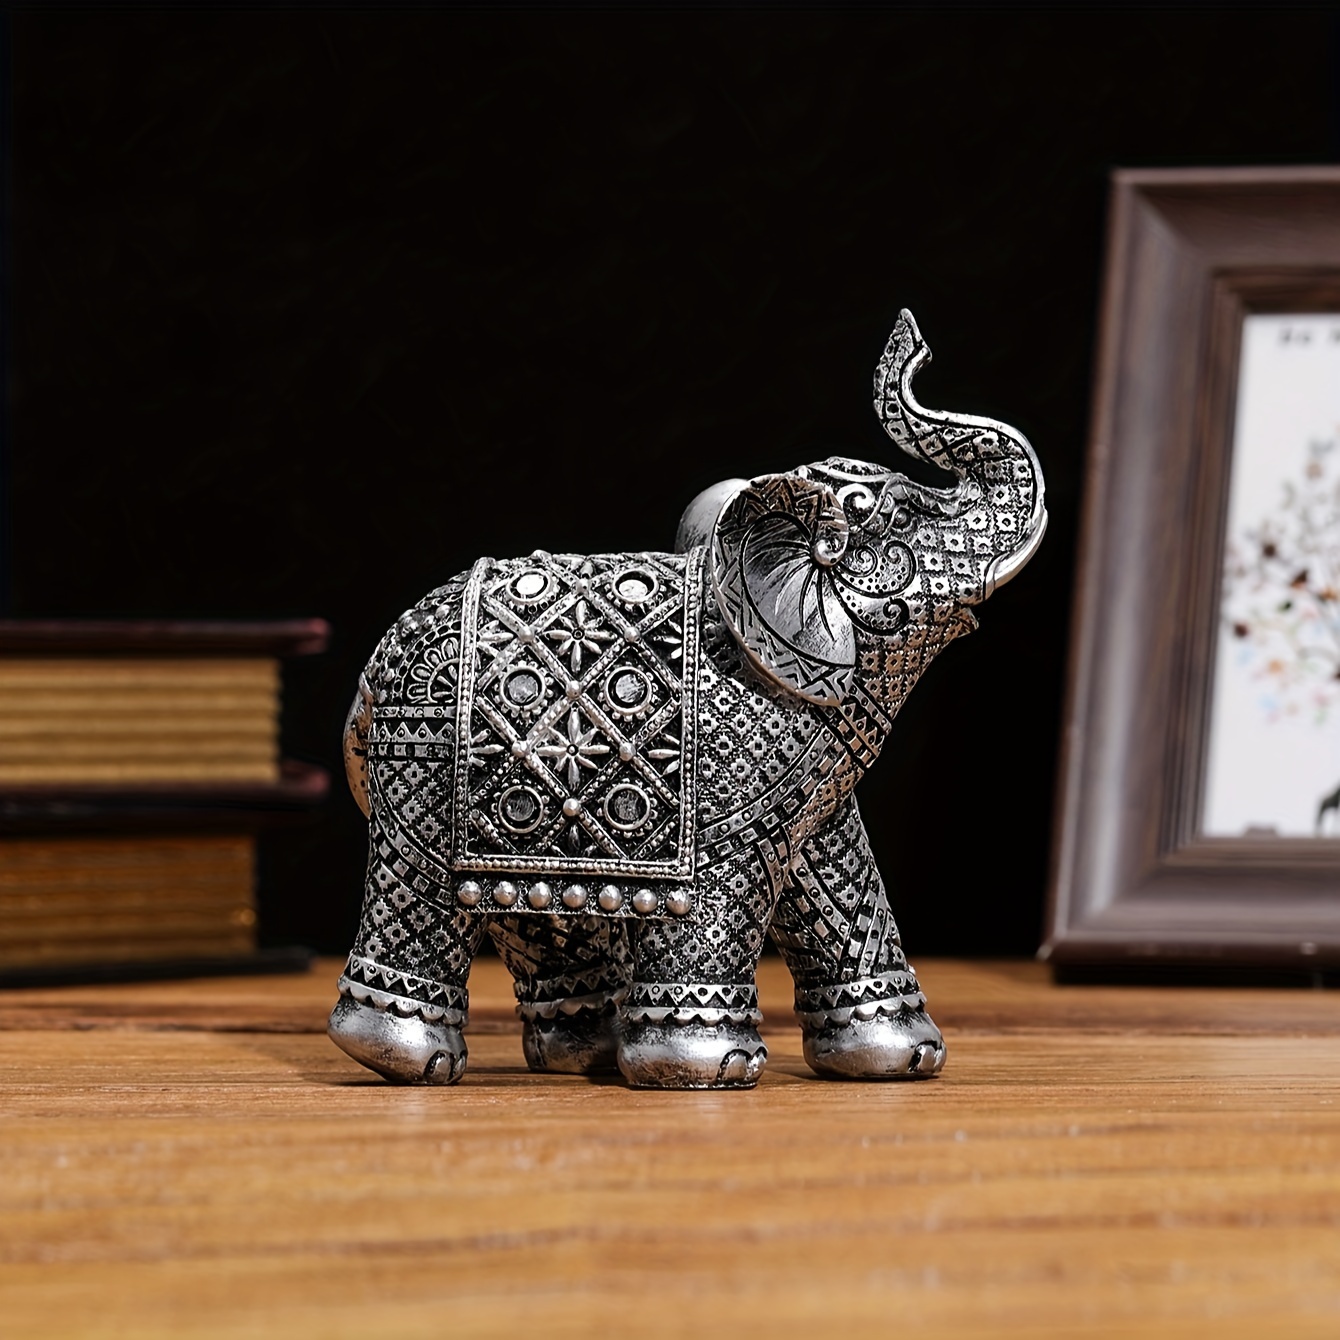 ヨーロッパスタイルの象の置物1個、5.2インチの樹脂工芸品、装飾彫刻、卓上装飾、アンティーク調の動物の置物、家庭やオフィス用